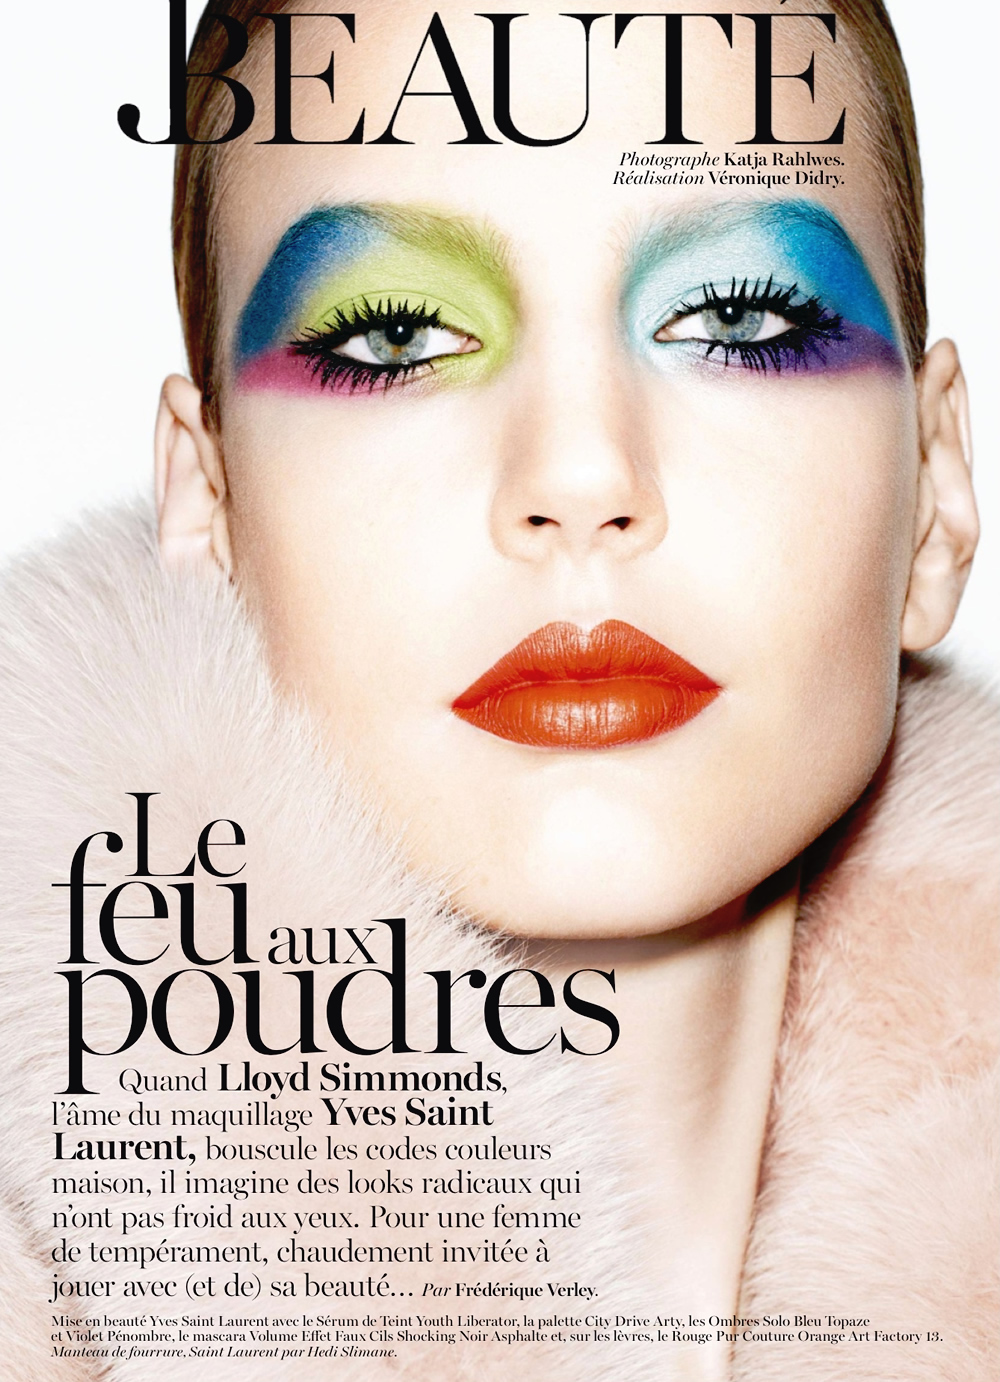 Elisabeth Erm by Katja Rahlwes for Vogue Paris October 2013 (1)